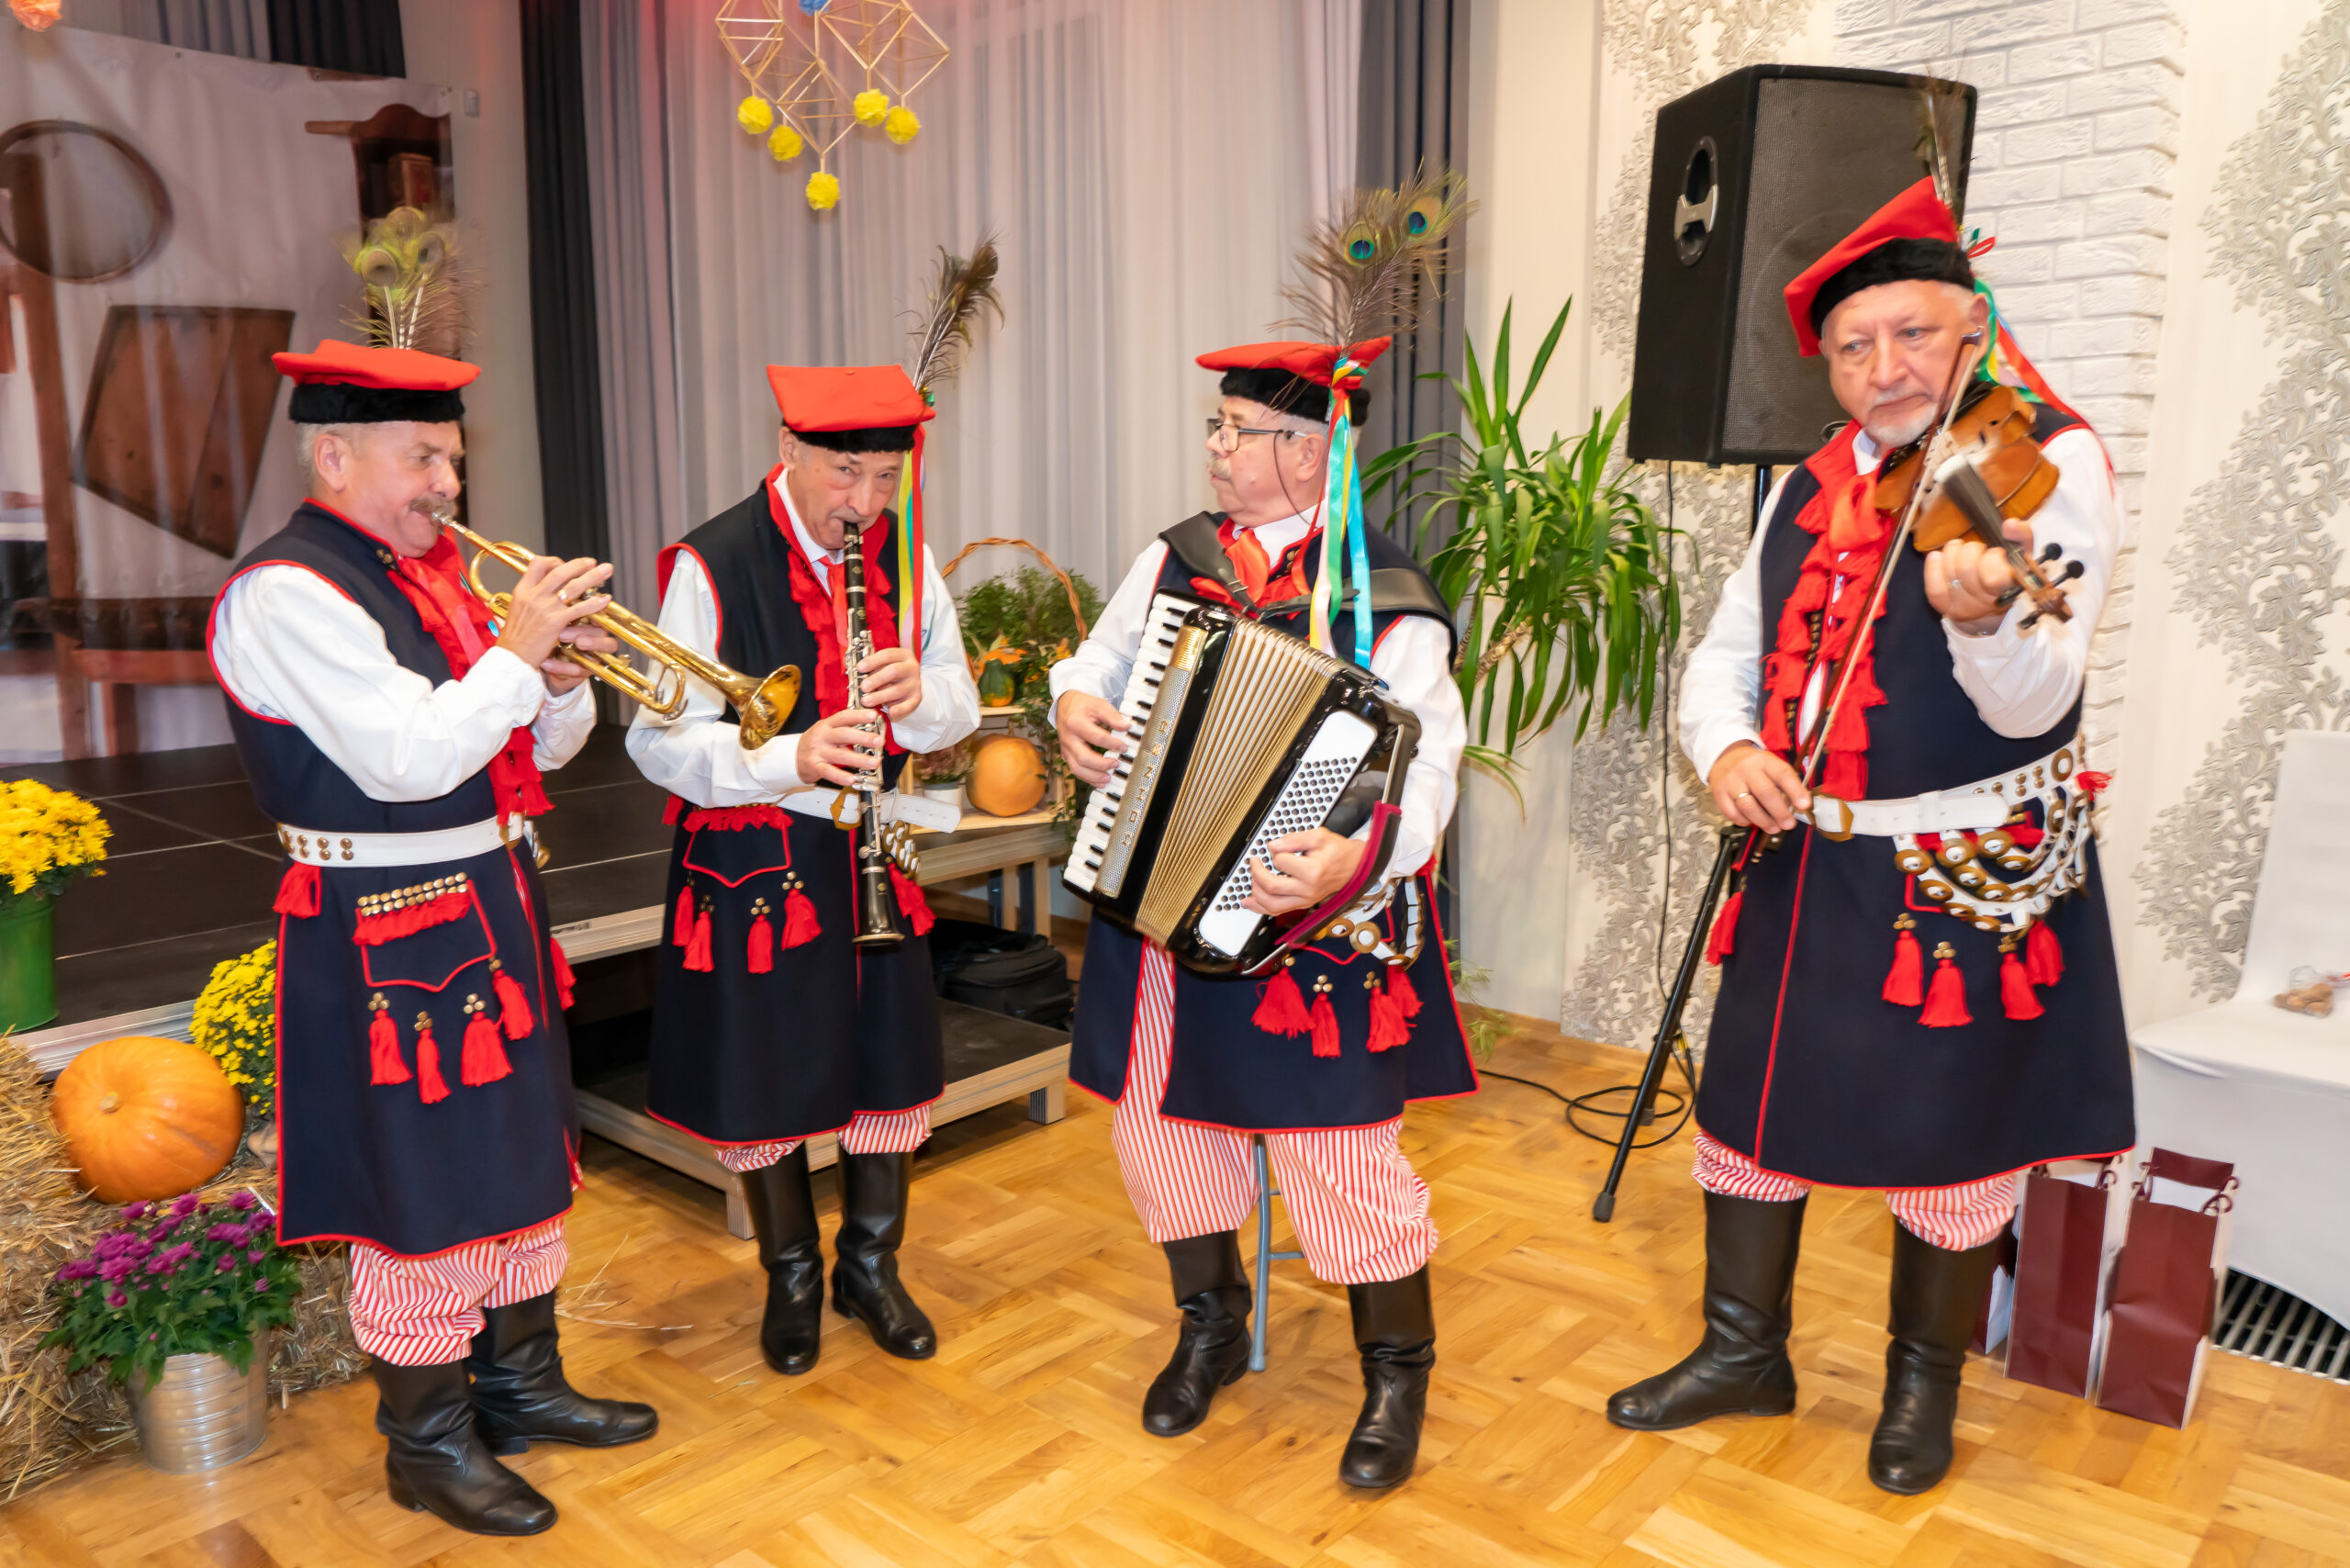 zdjęcie przedstawia czterech mężczyzn w strojach krakowskich grających na instrumentach